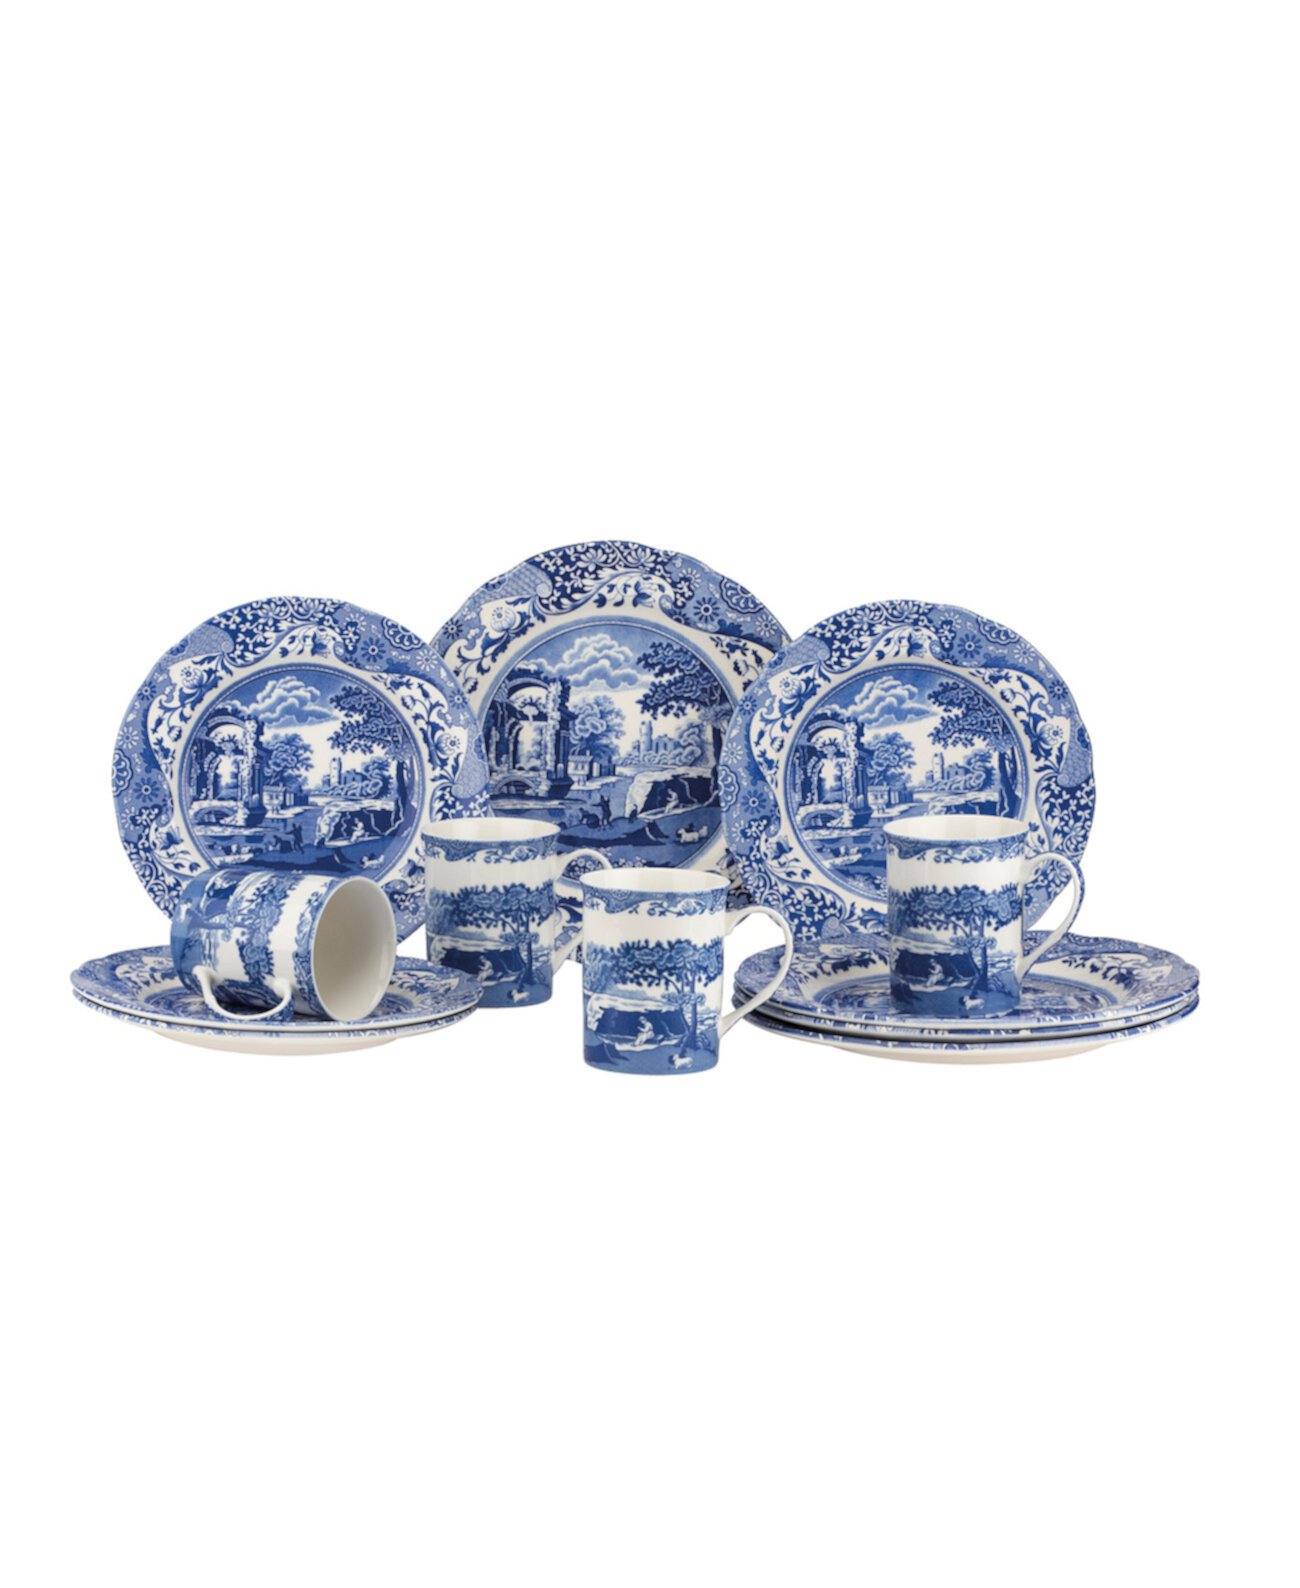 Синий итальянский набор посуды из 12 предметов, сервиз на 4 персоны Spode